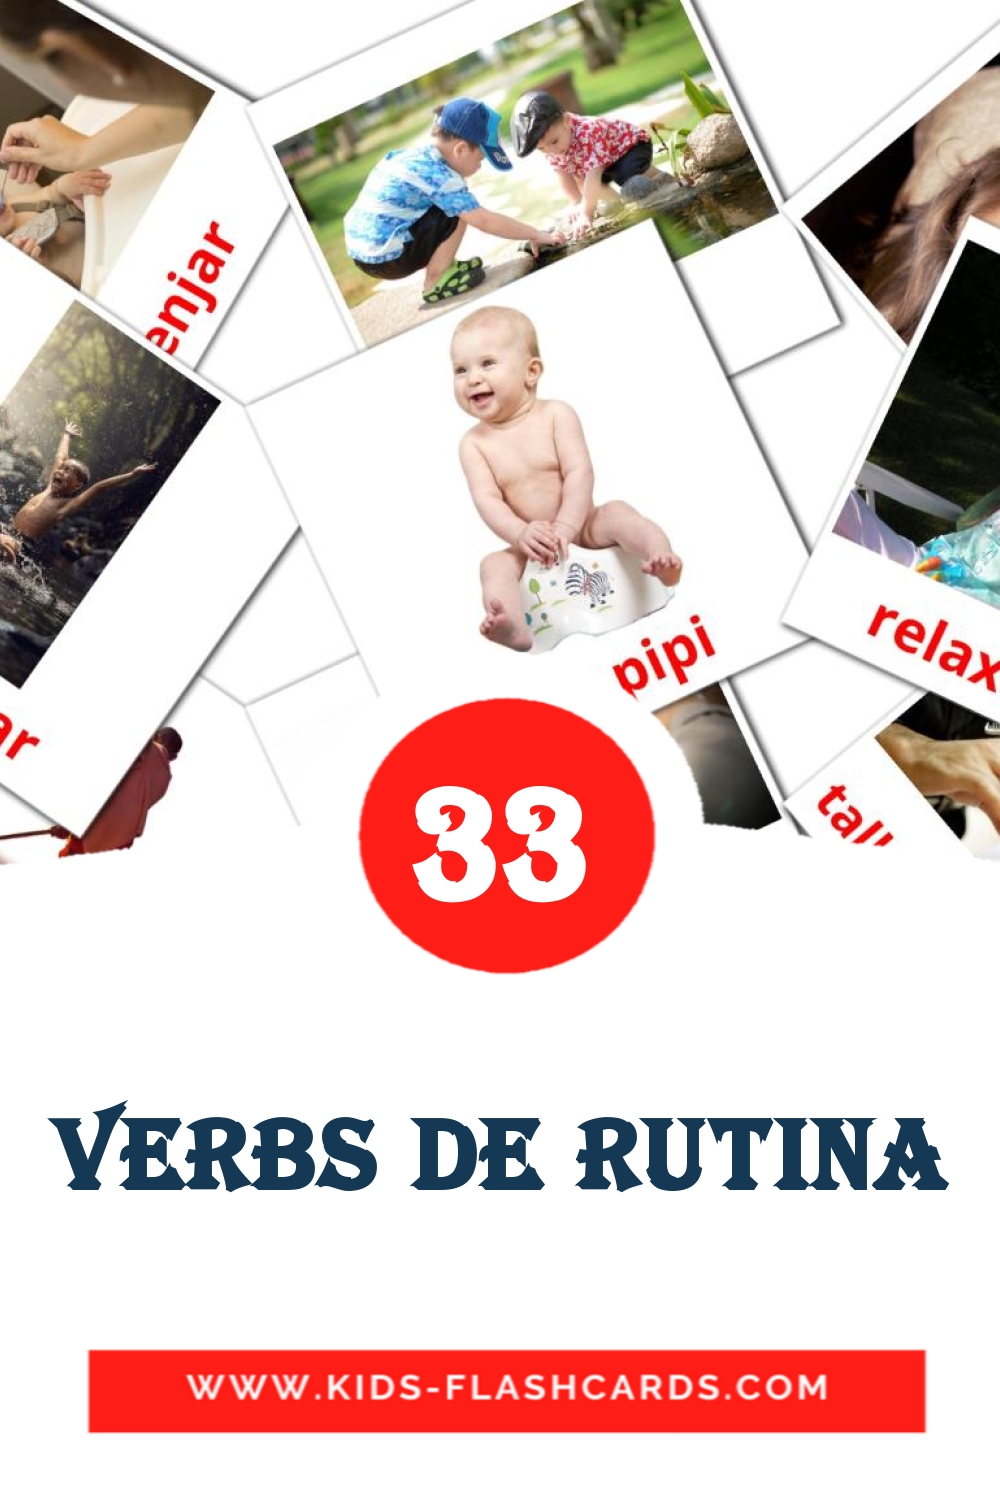 33 carte illustrate di Verbs de rutina per la scuola materna in catalano